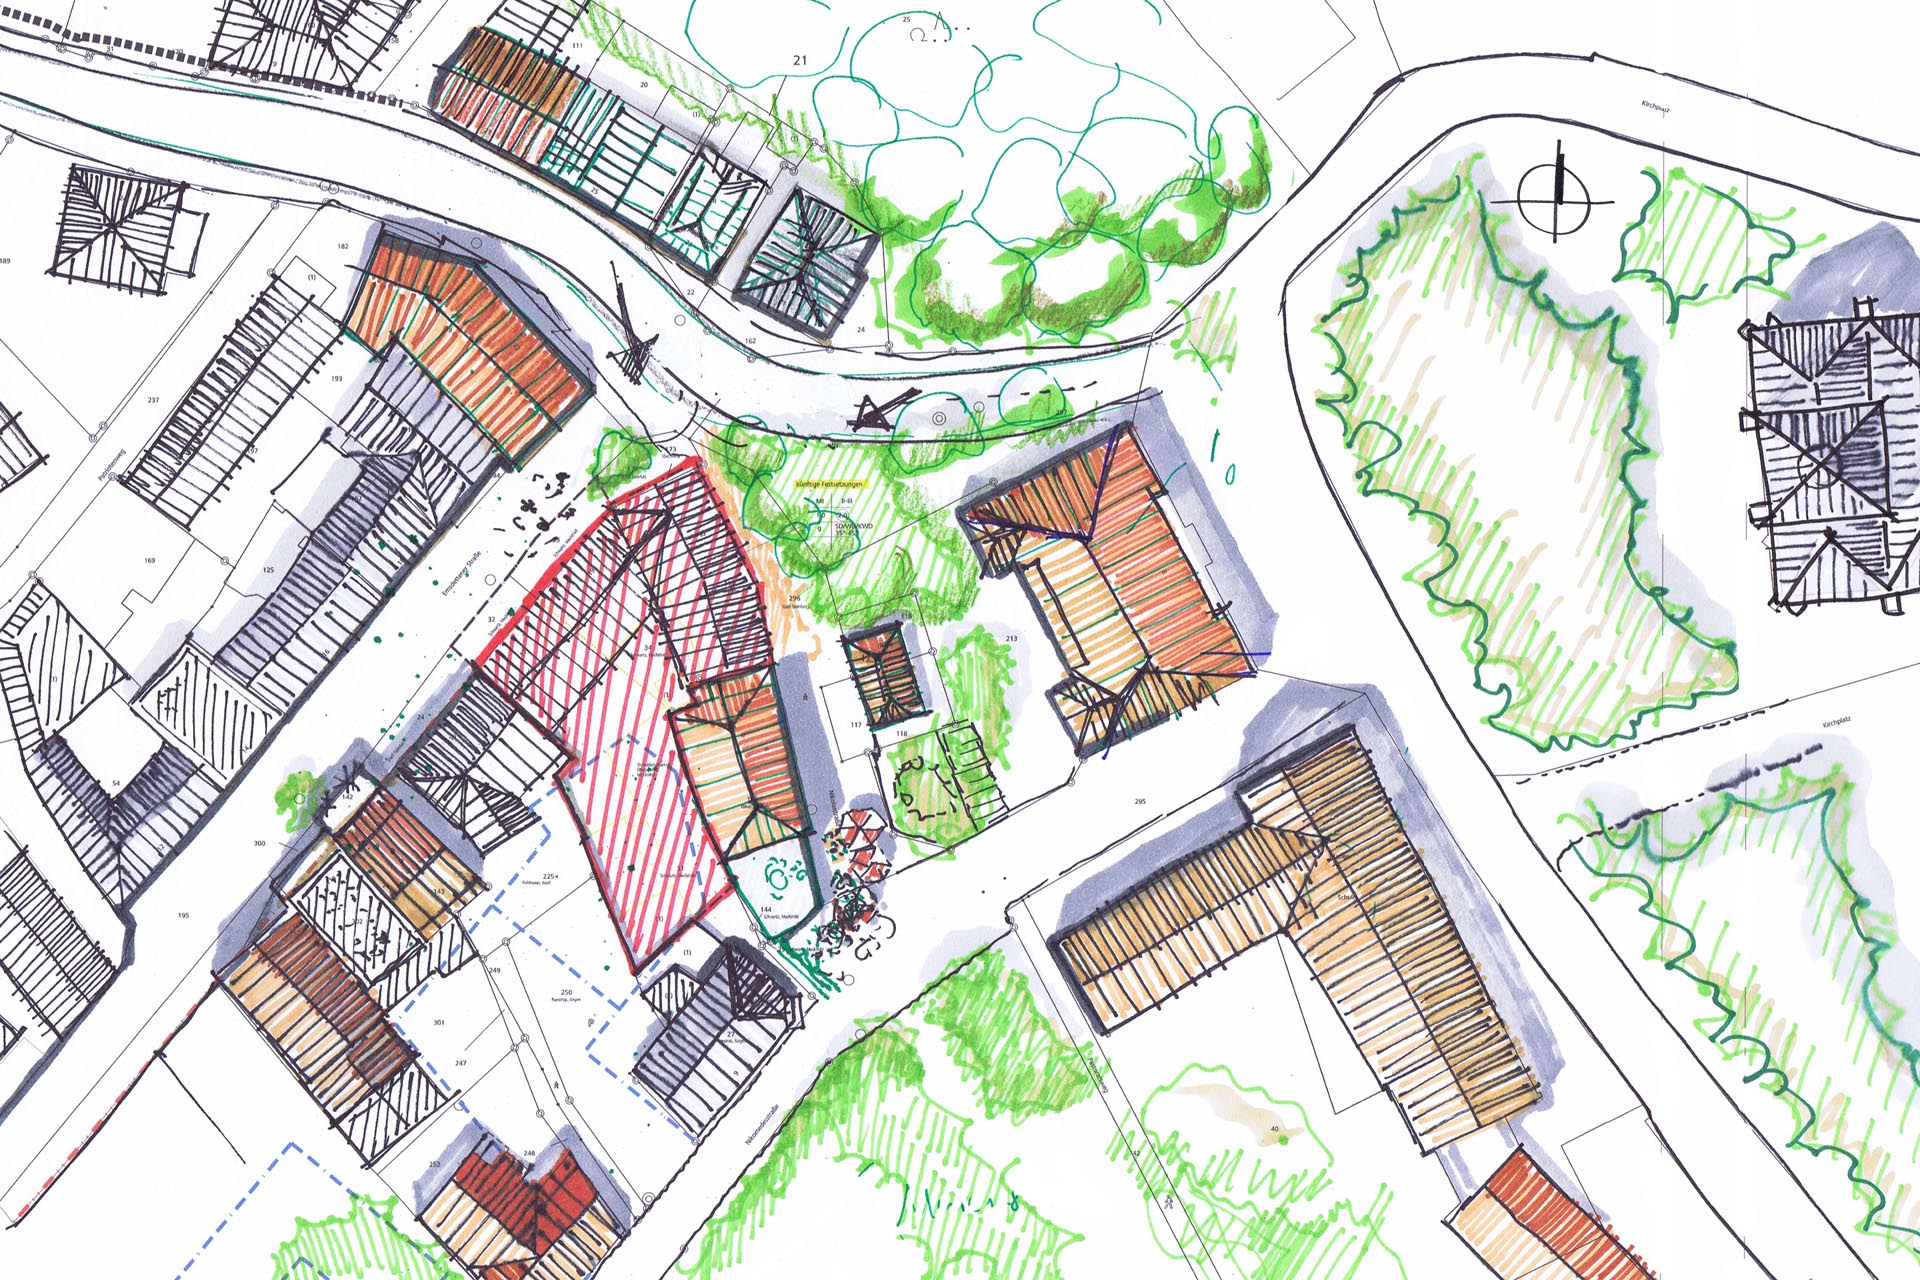 Analyse der stadträumlichen Einbindung: Trotz der Innnenstadtlage ist das Objekt von viel Grün umgeben